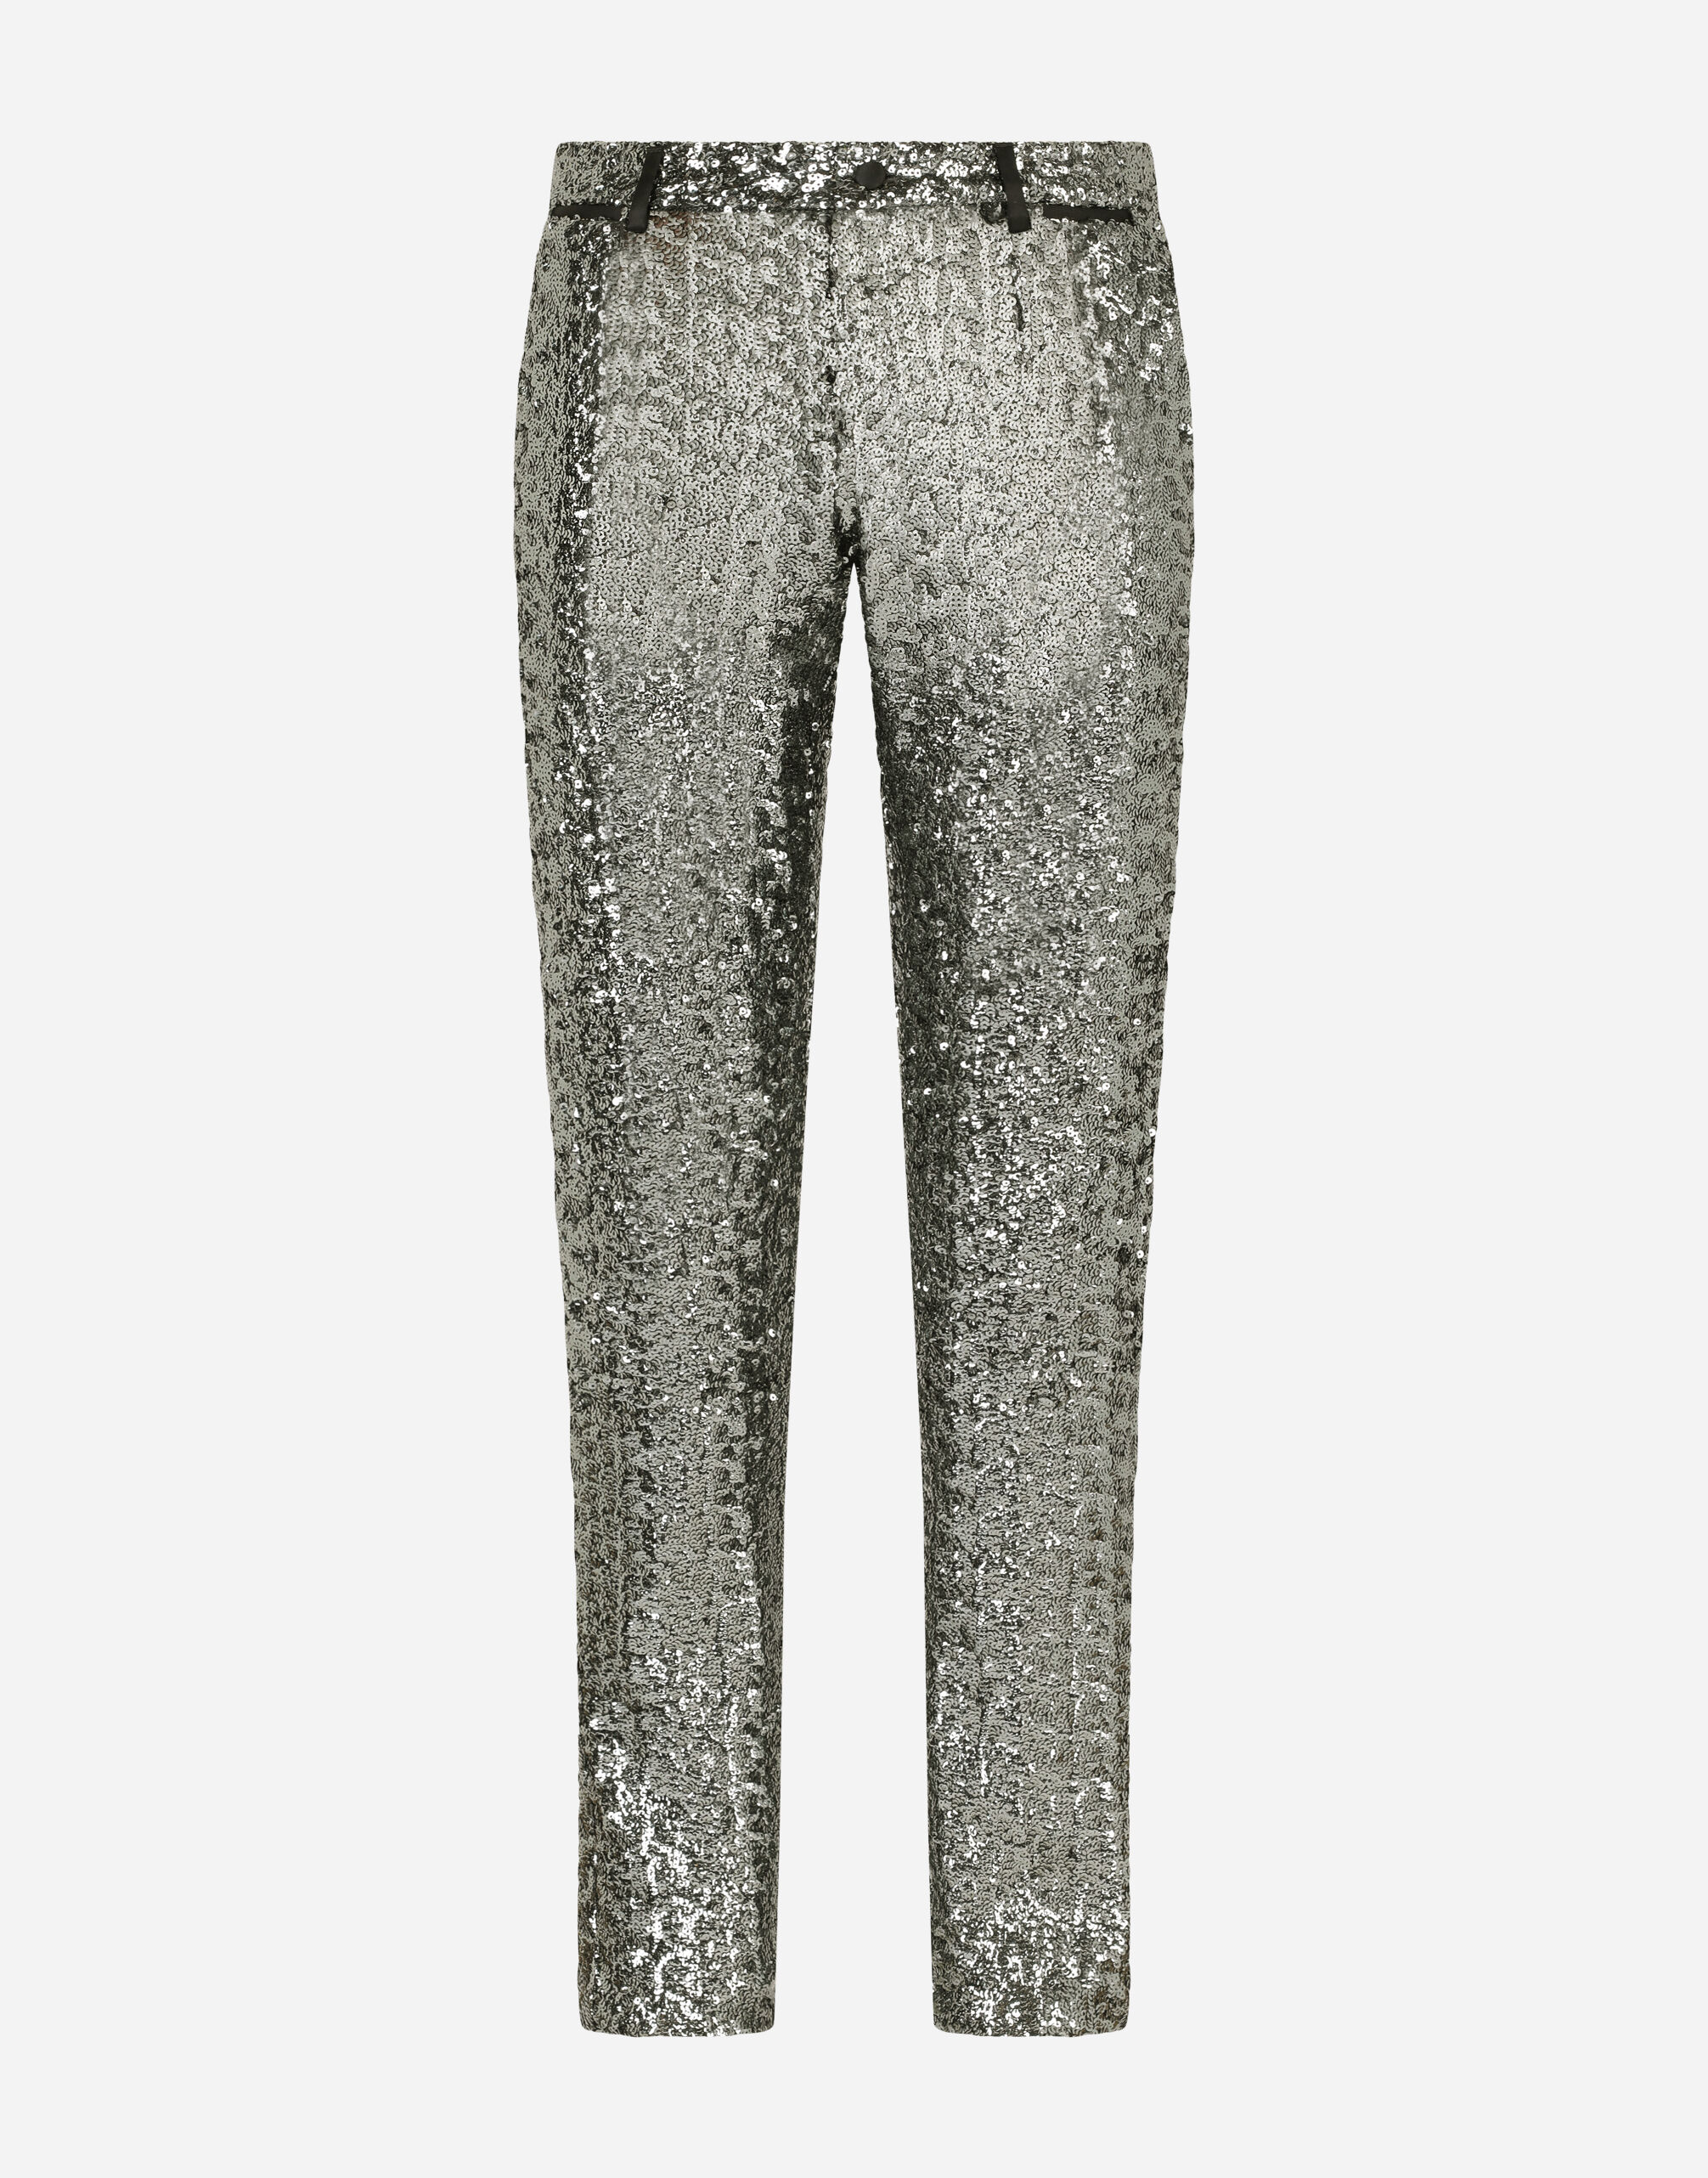 Dolce & Gabbana Tailored sequined pants Grey GP01PTFU4LB